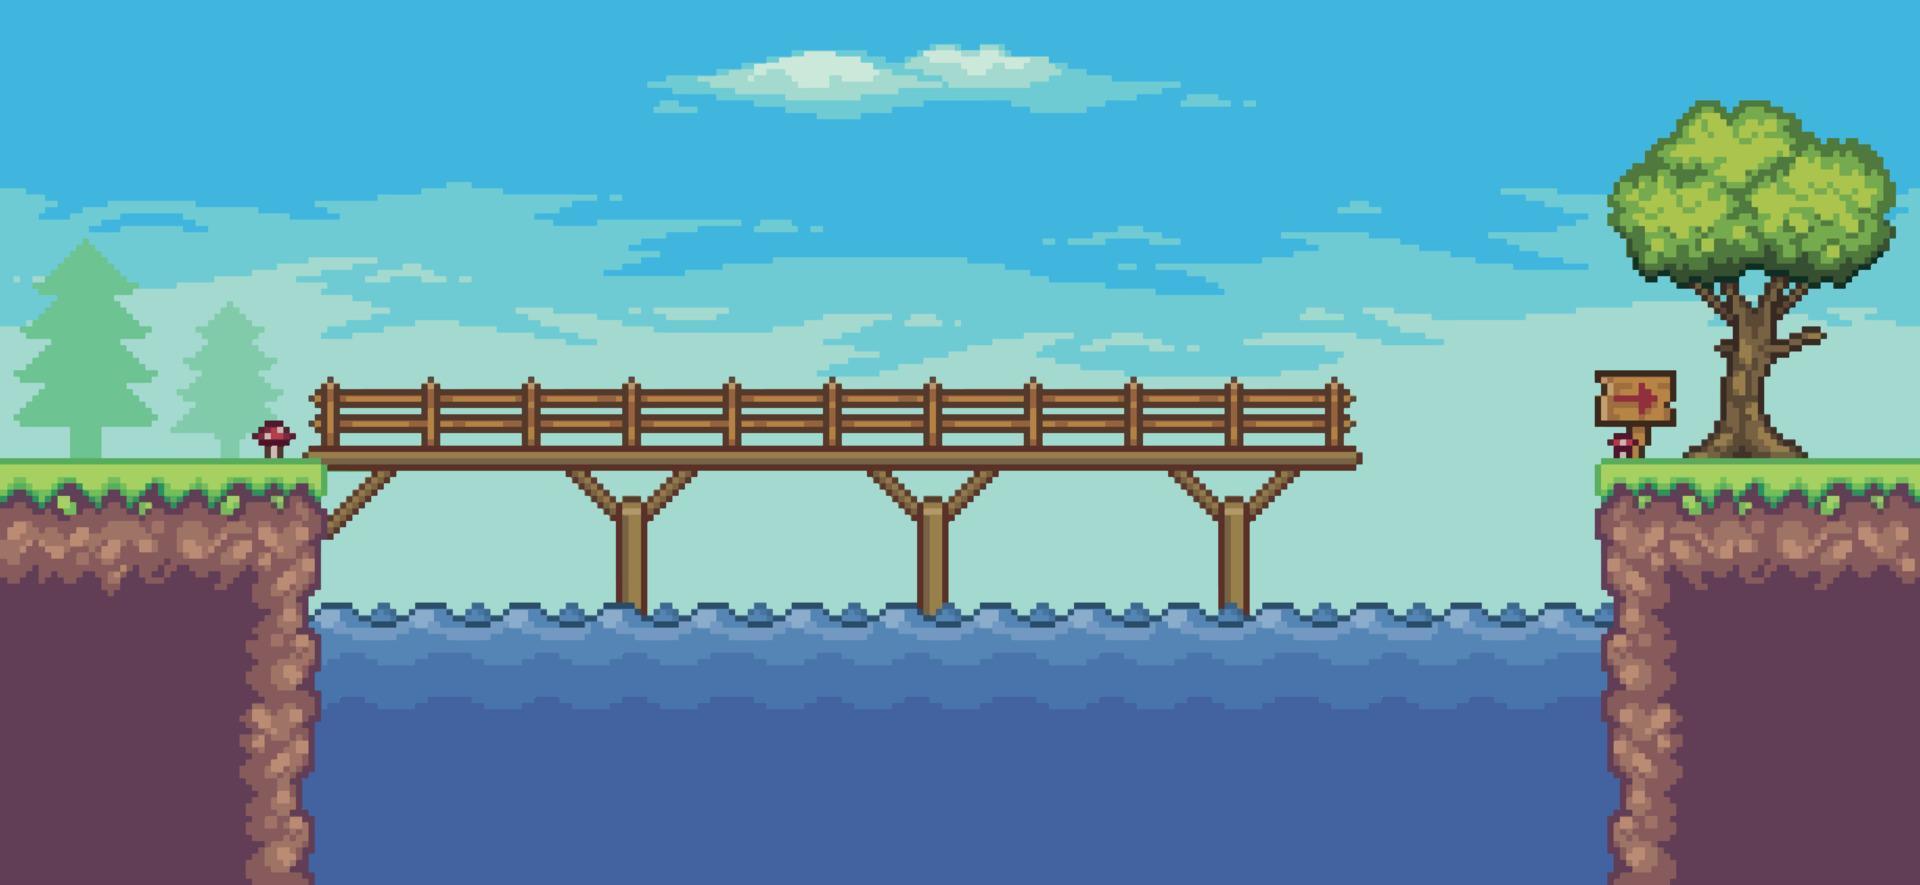 Pixel-Art-Arcade-Spielszene mit schwimmender Plattform, Fluss, Brücke, Bäumen, Zaun und Wolken, 8bit vektor